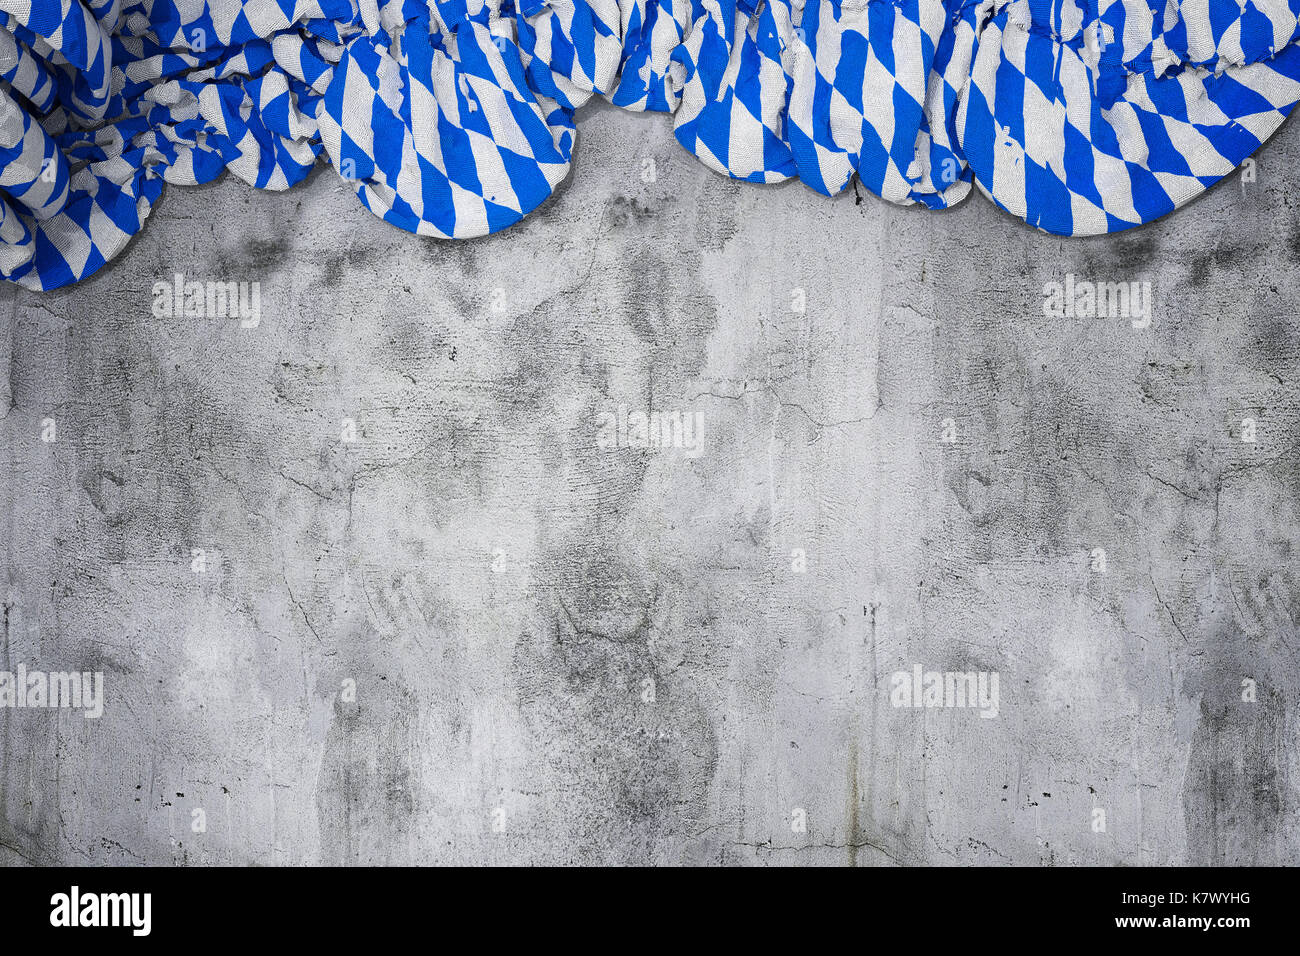 Crumpled bandiera bavarese con i colori del bianco e del blu su vuoto muro di cemento Foto Stock